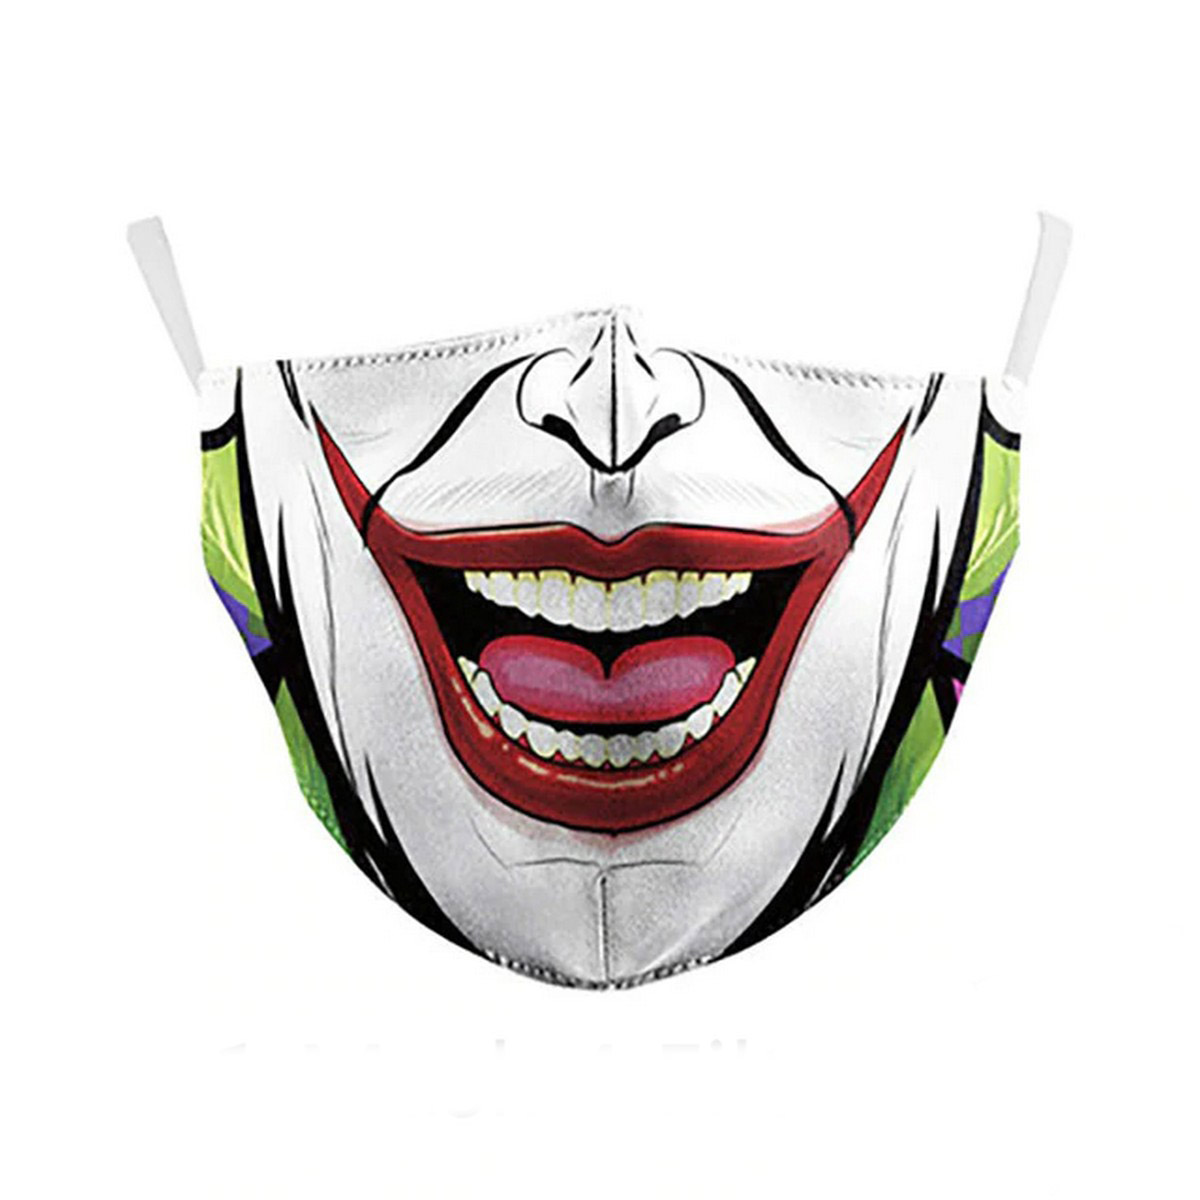 Joker face mask